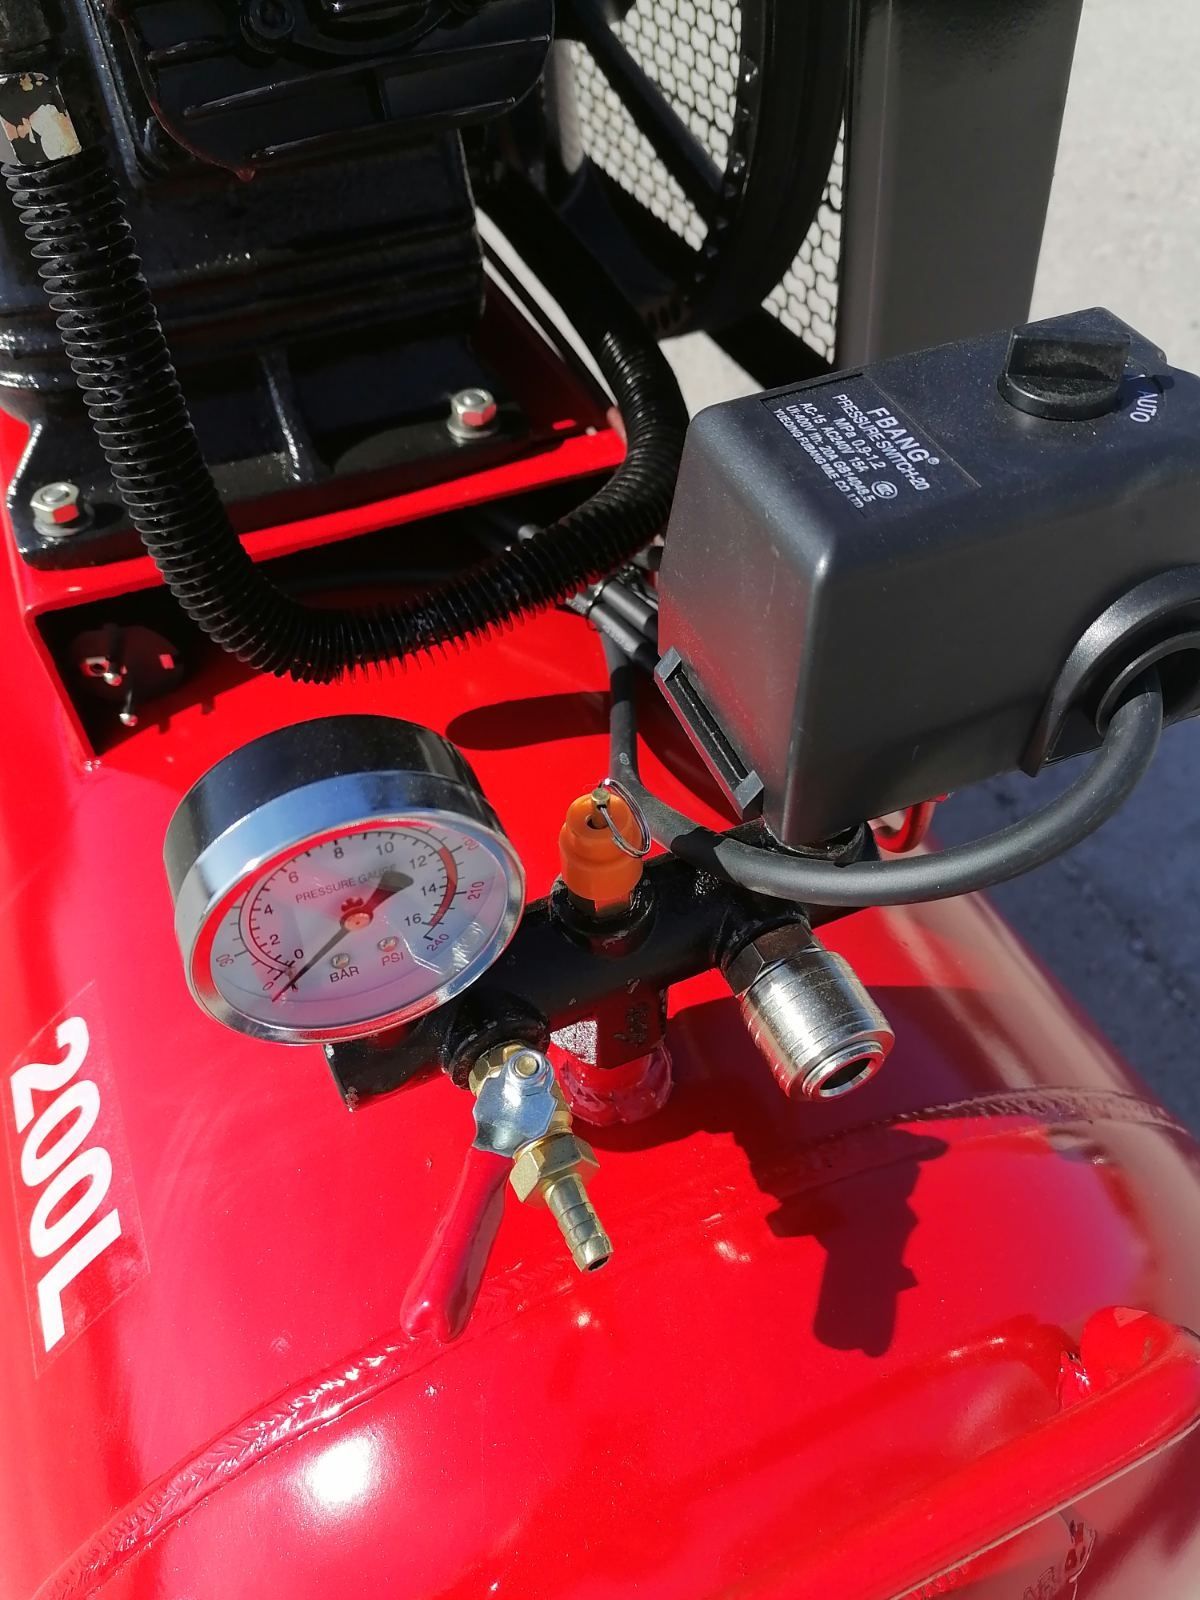 Компресор за въздух Vion Italy compressor 200 литра